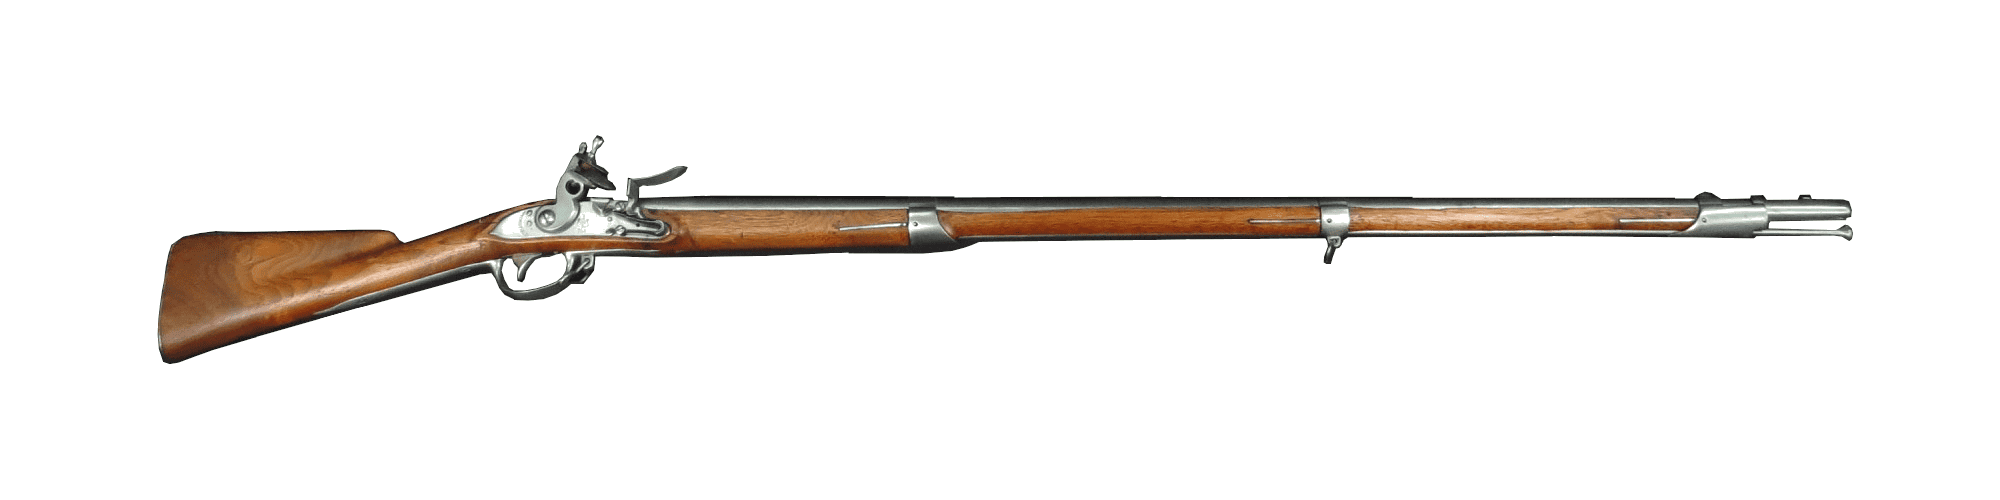 Model 1795 Musket